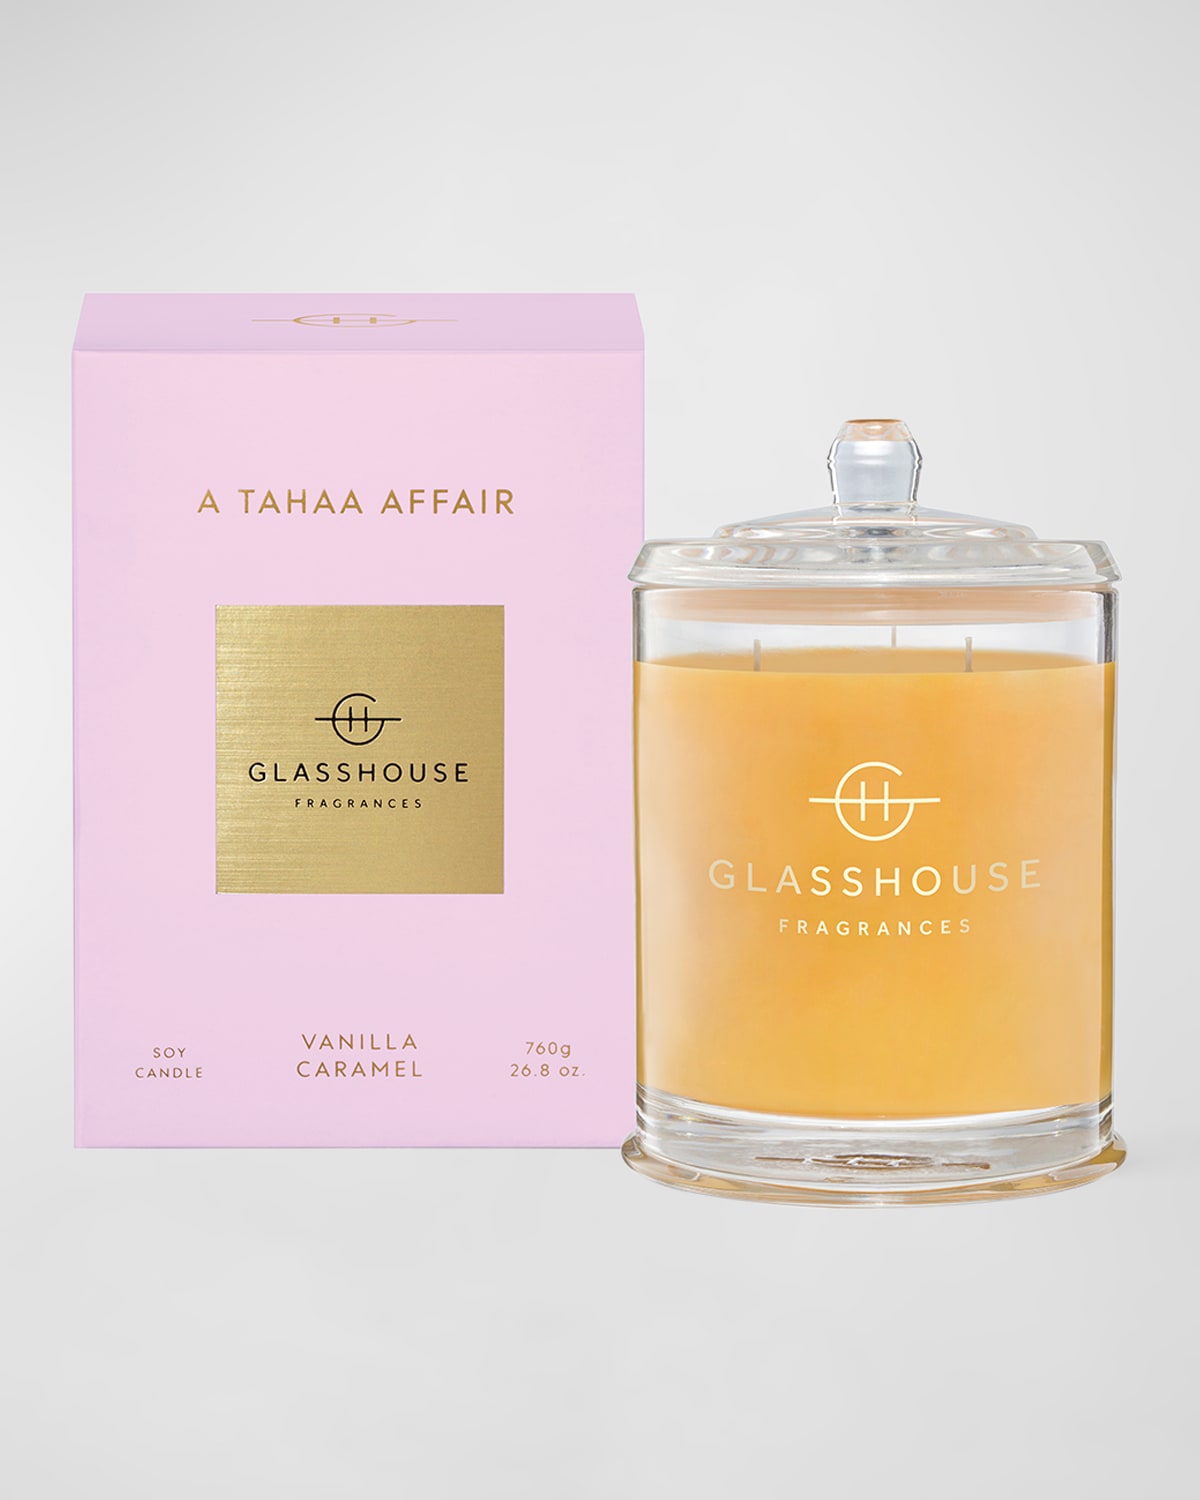 Glasshouse Fragrances 26.8 Oz. A Tahaa Affair Candle